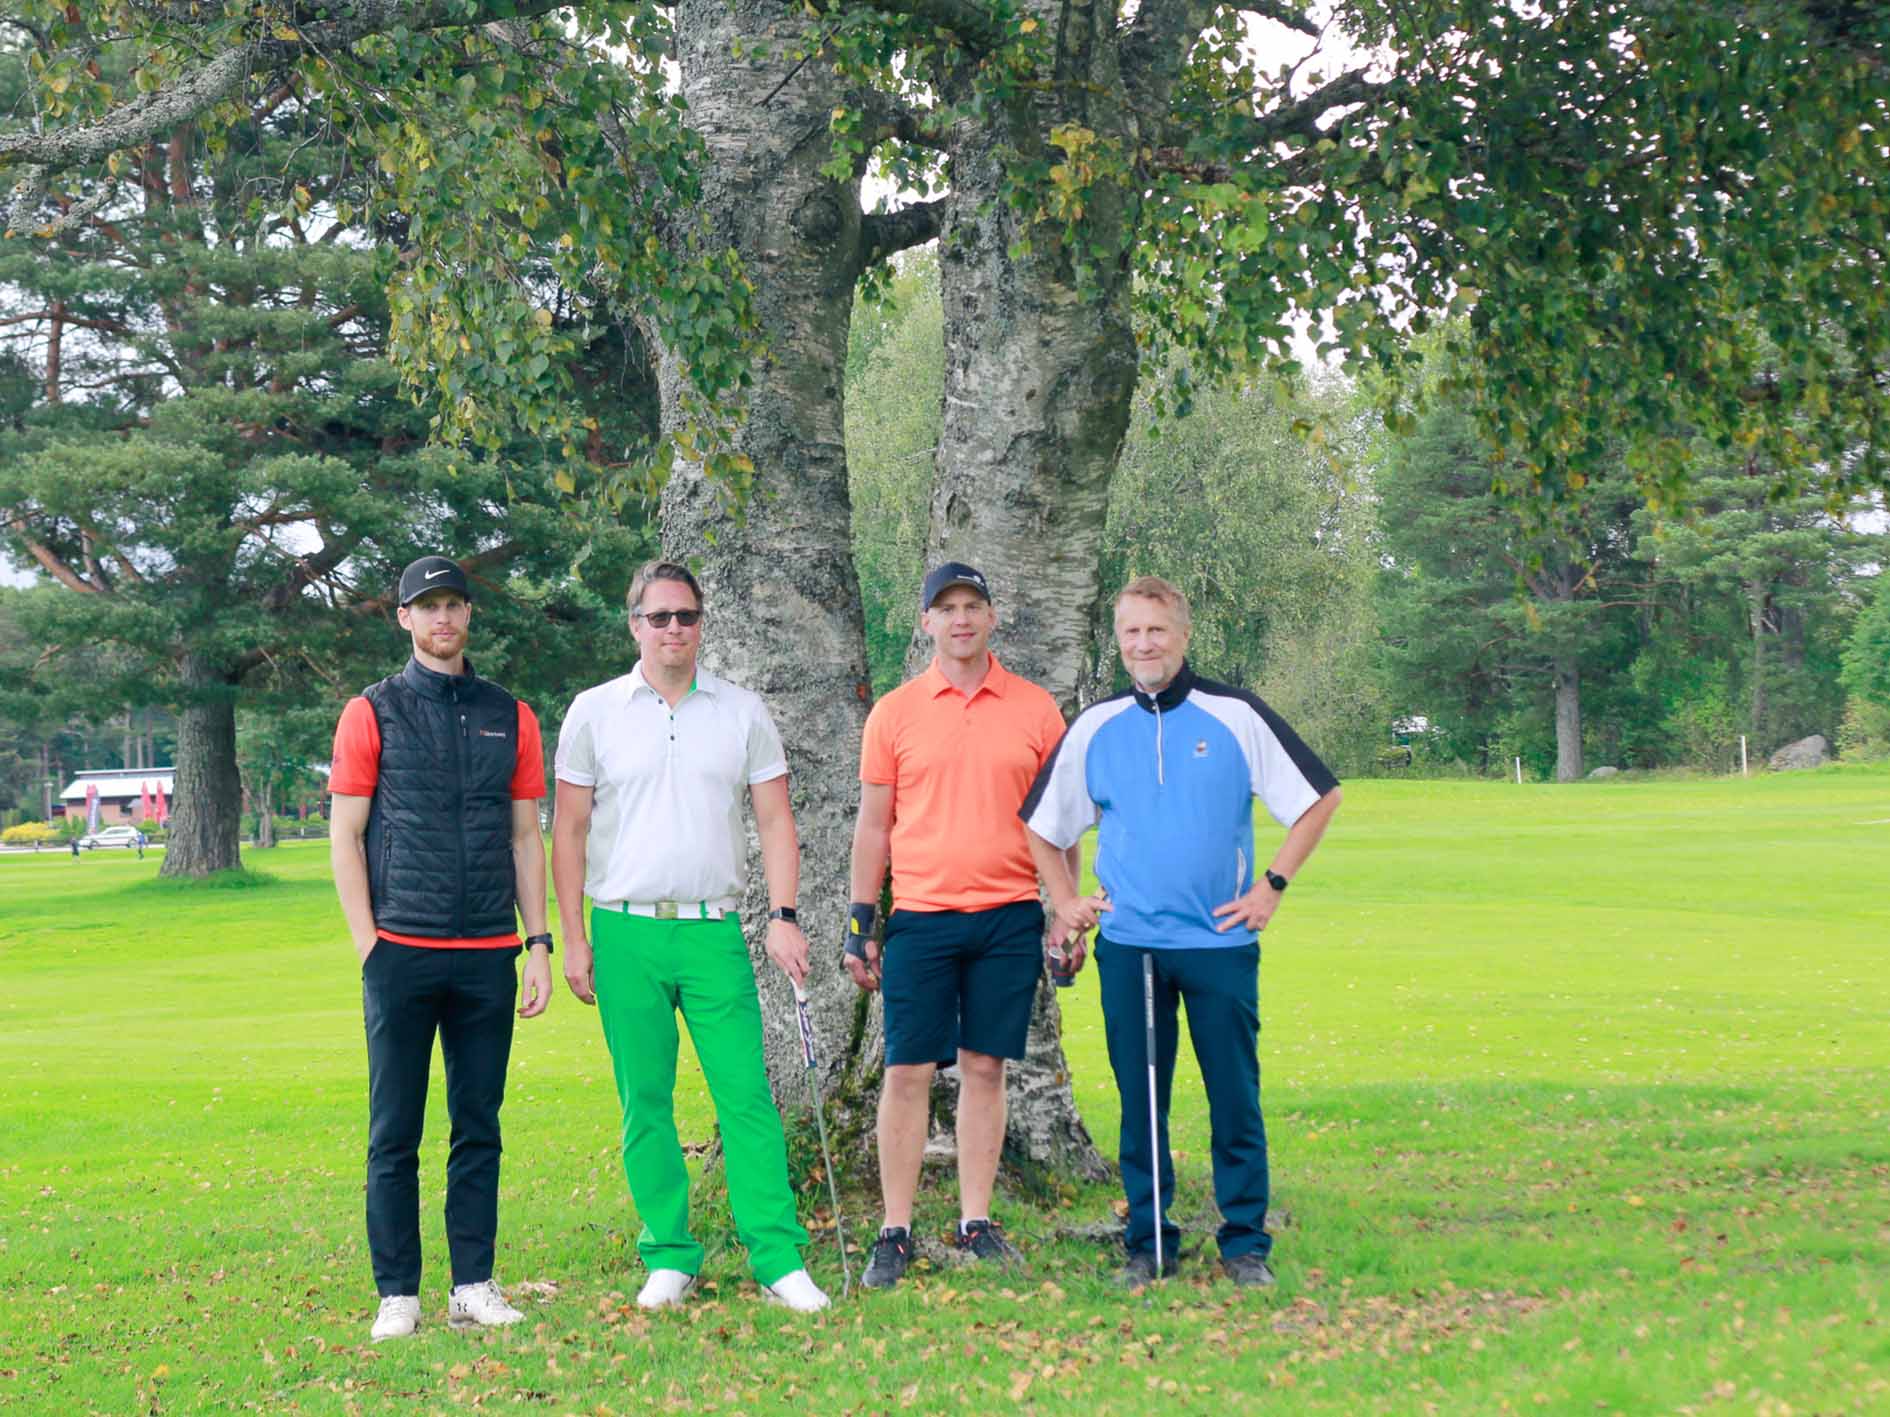 Golftävling för Gävle Energis kunder. Fotograf: Elin Brodin